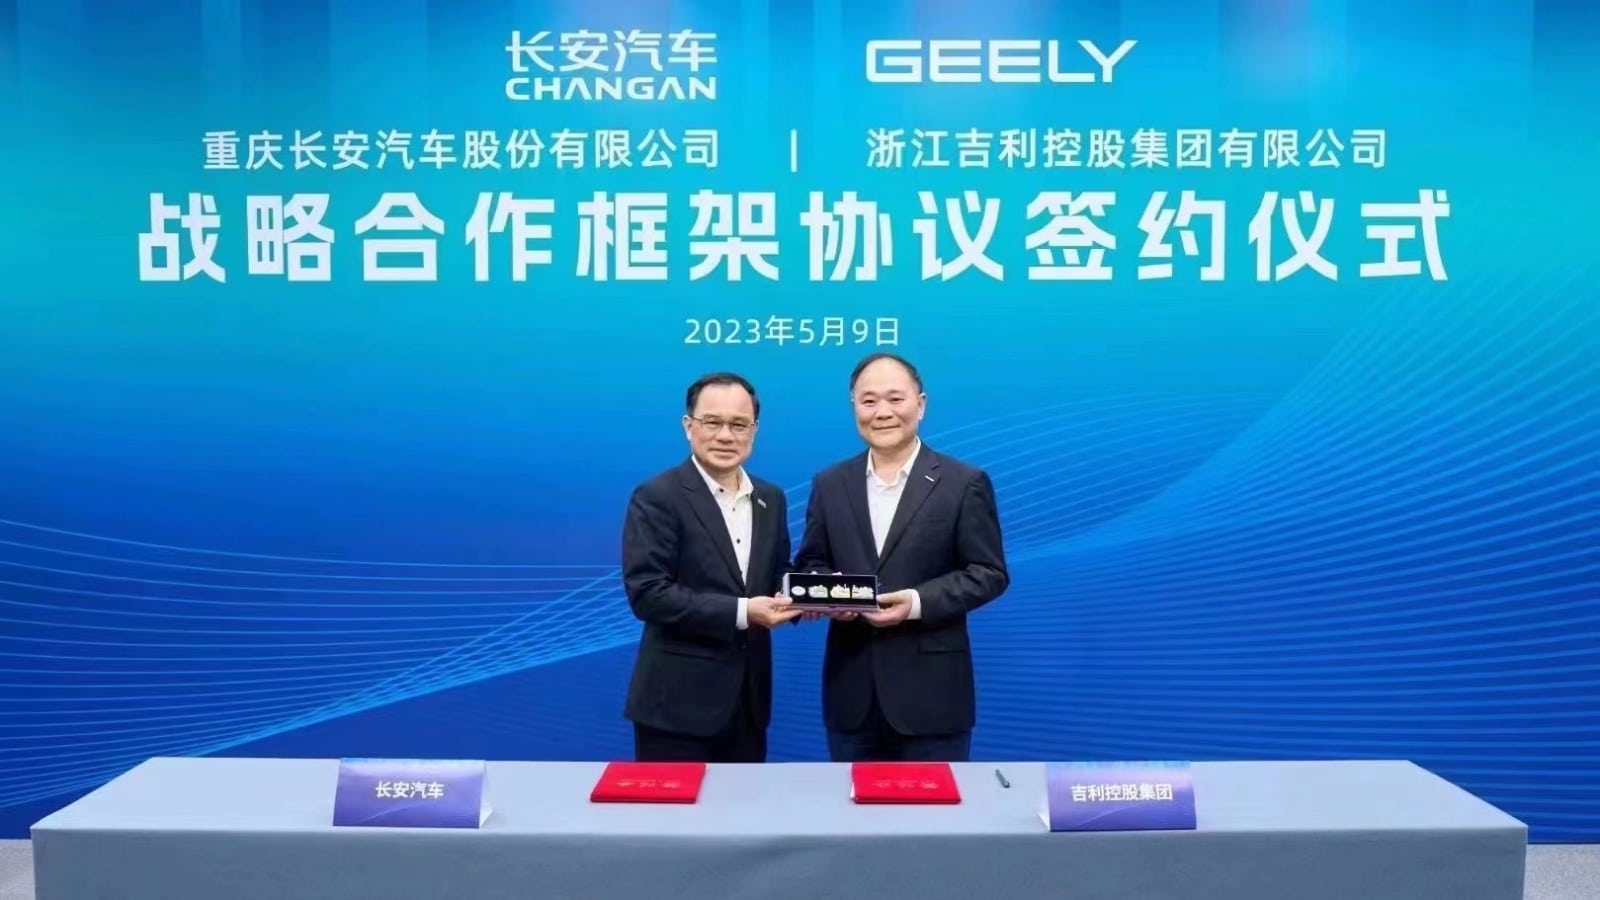 Changan et Geely : accord de coopération stratégique entre les deux géants chinois